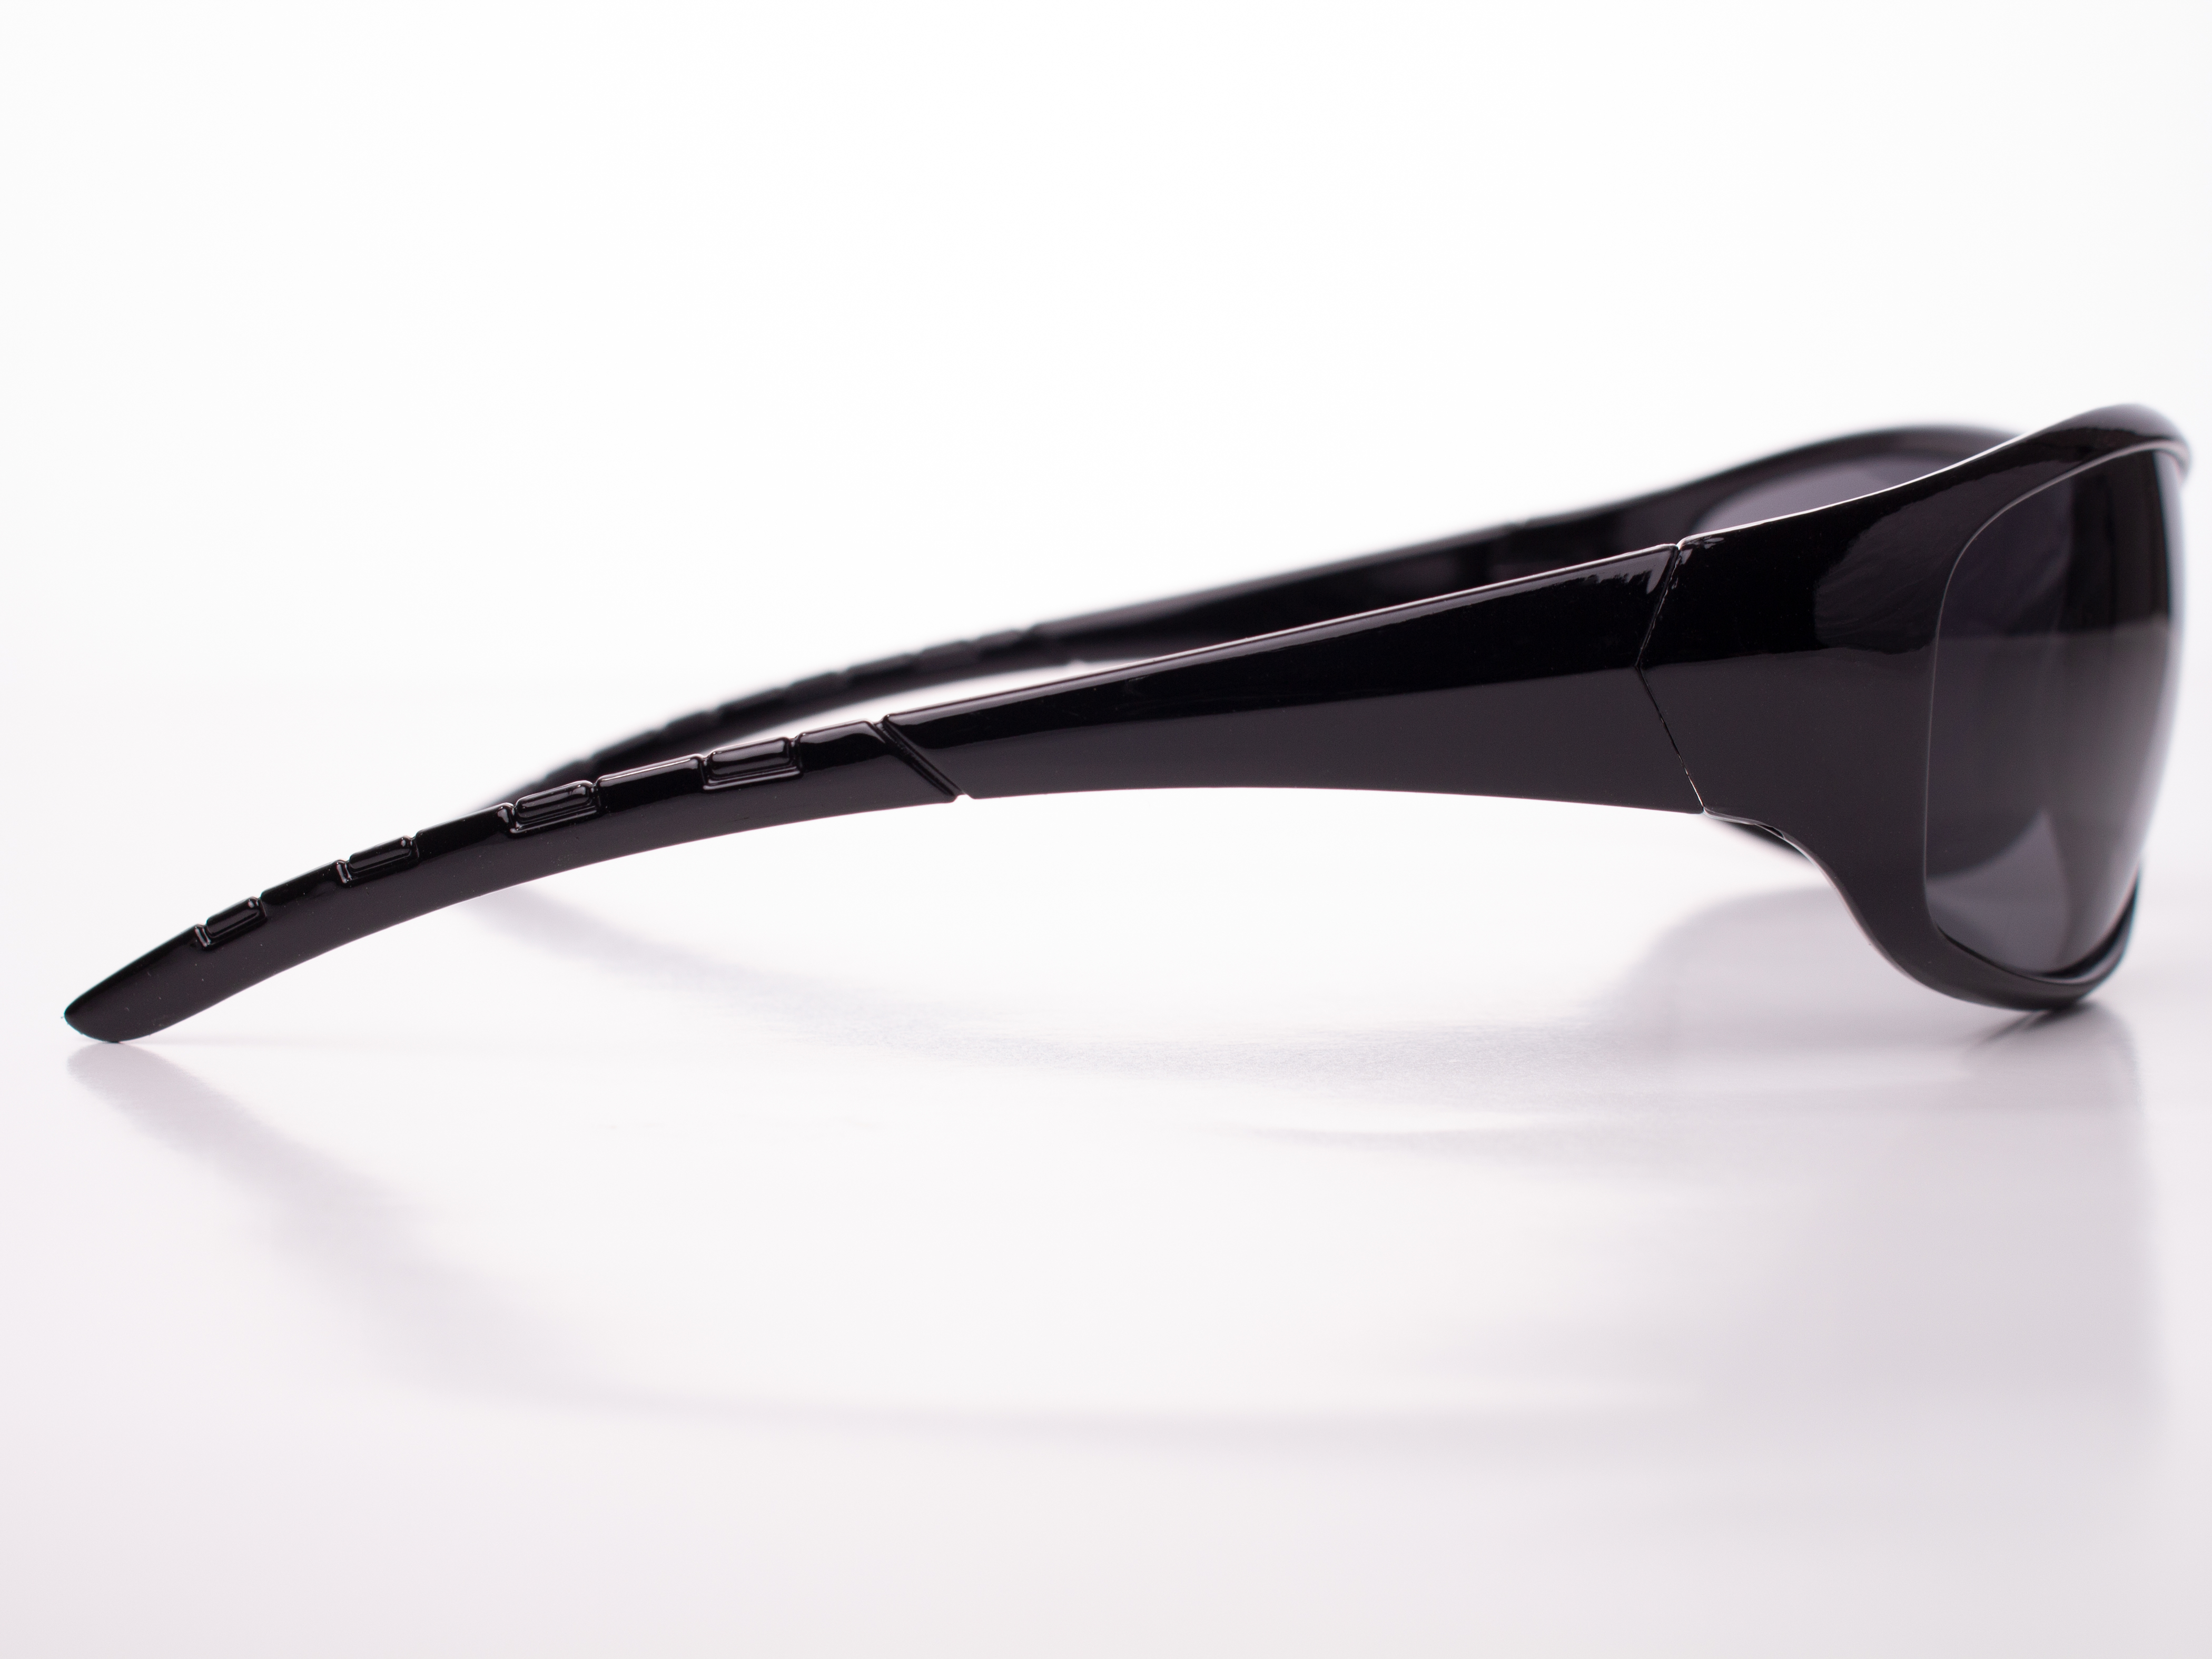 Men's Driving Wrap Sport Sunglasses, Black Oval Lens, Gloss or Matte Black Frame - image 2 of 3